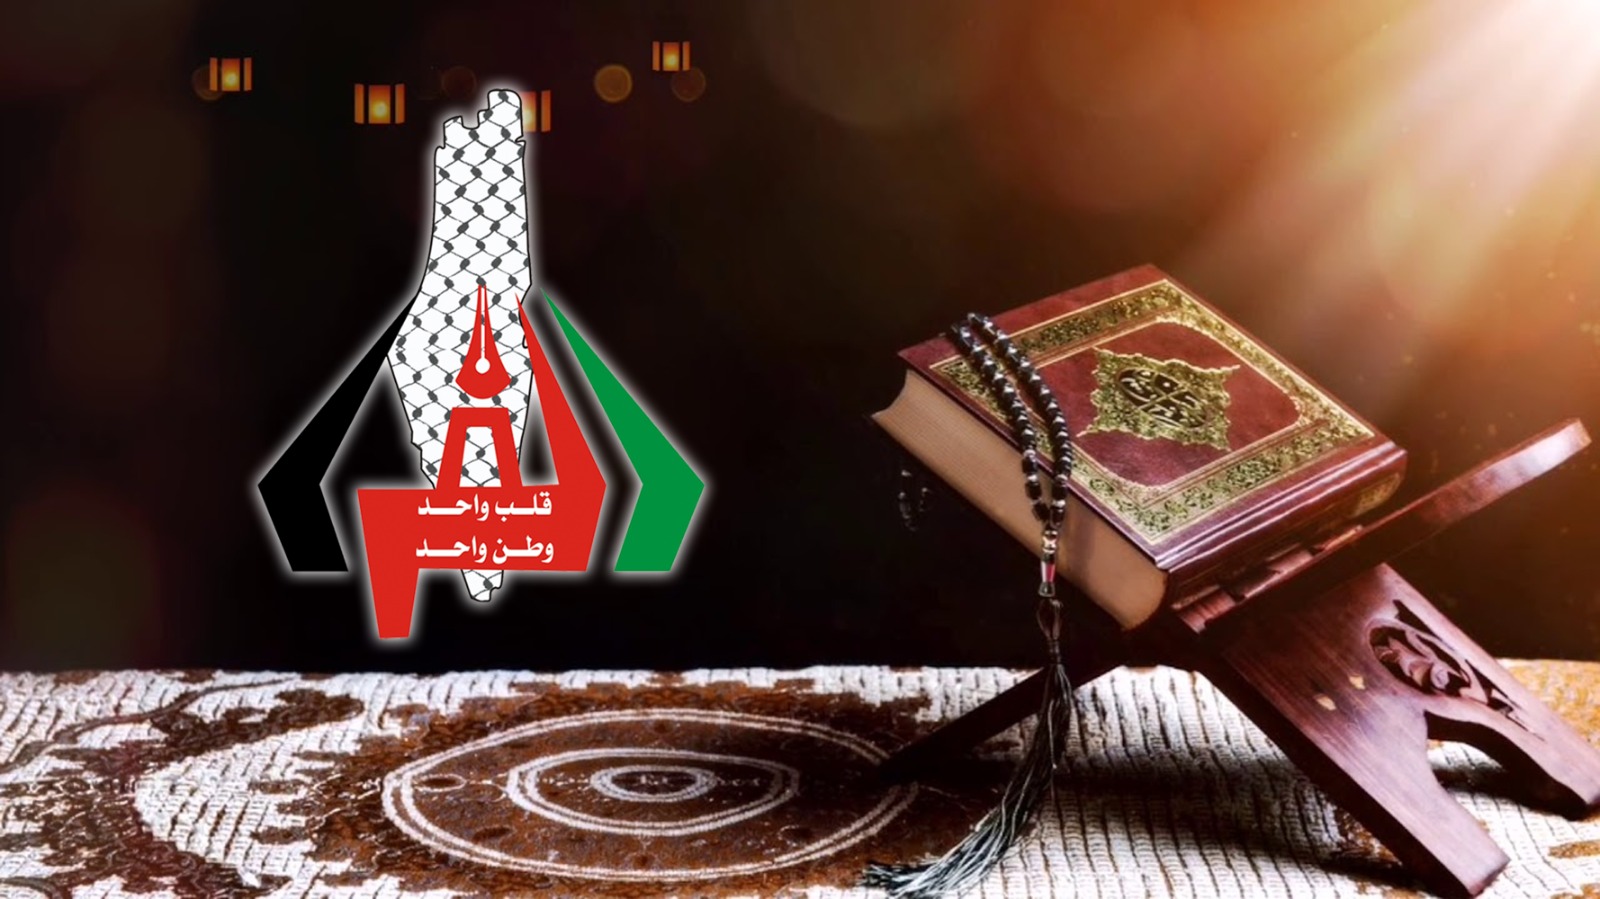 الطالية غدير محمود الفرا تتم حفظ القرآن الكريم كاملا 